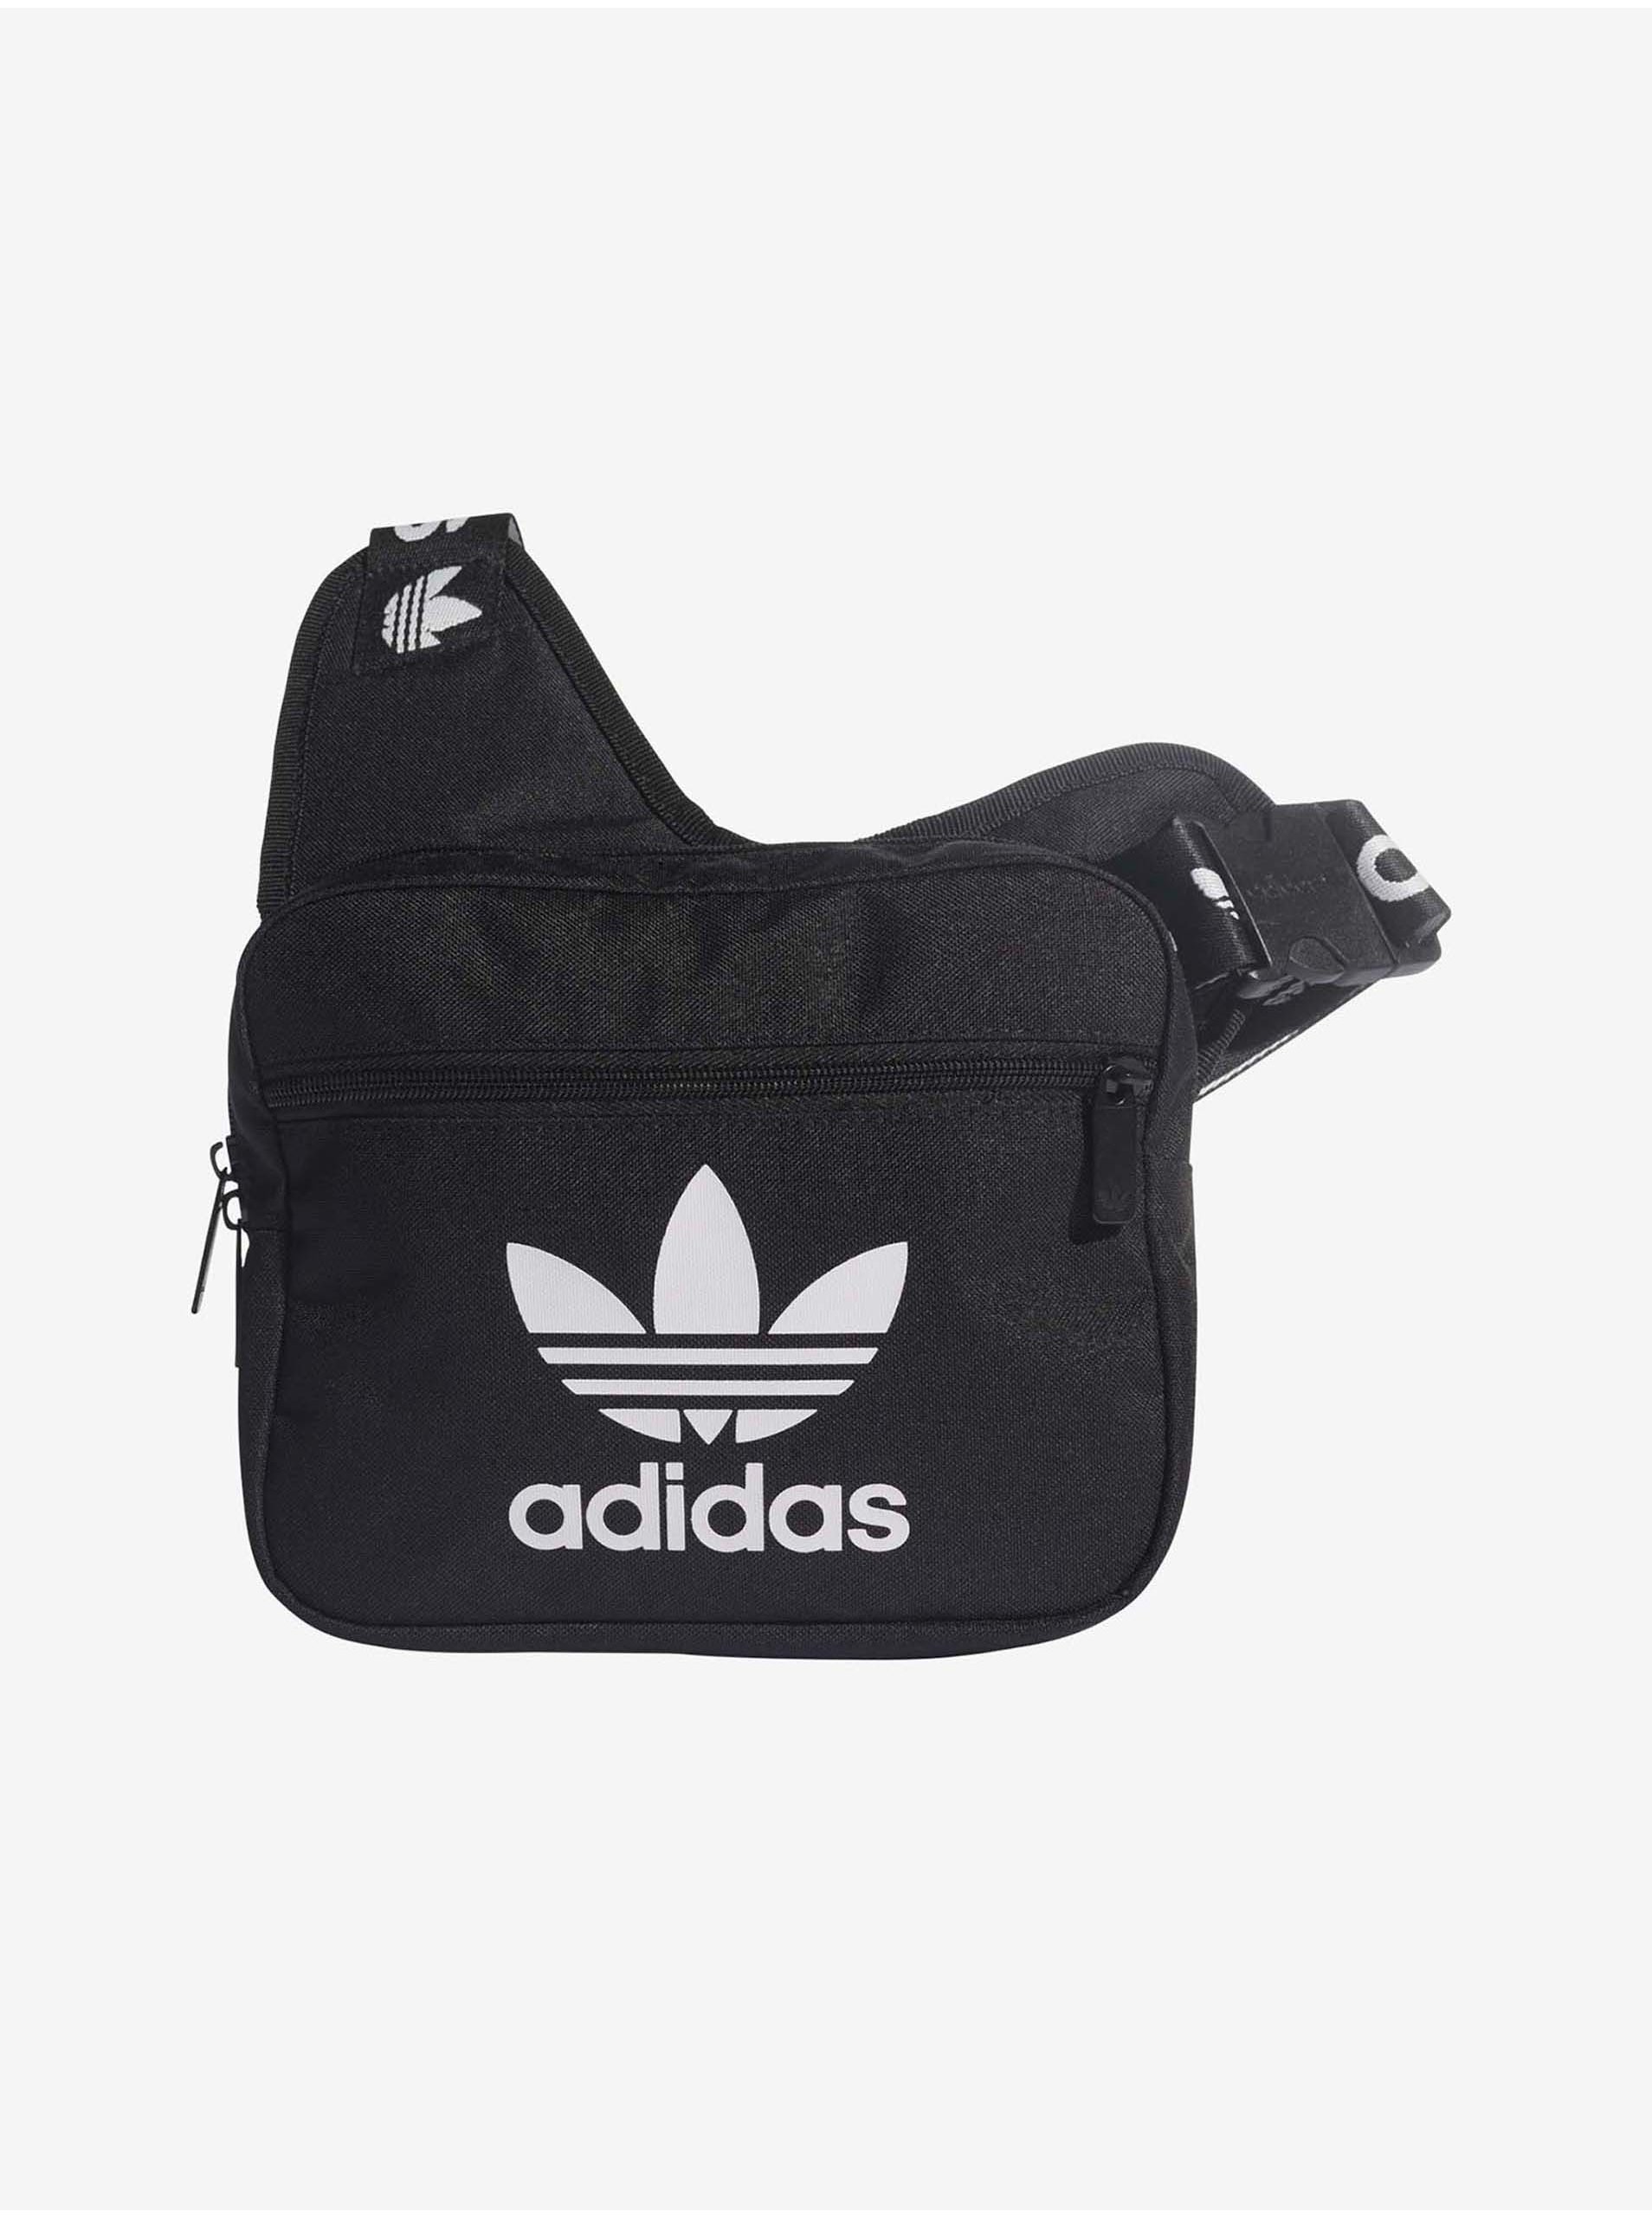 Handtasche Adidas Unisex